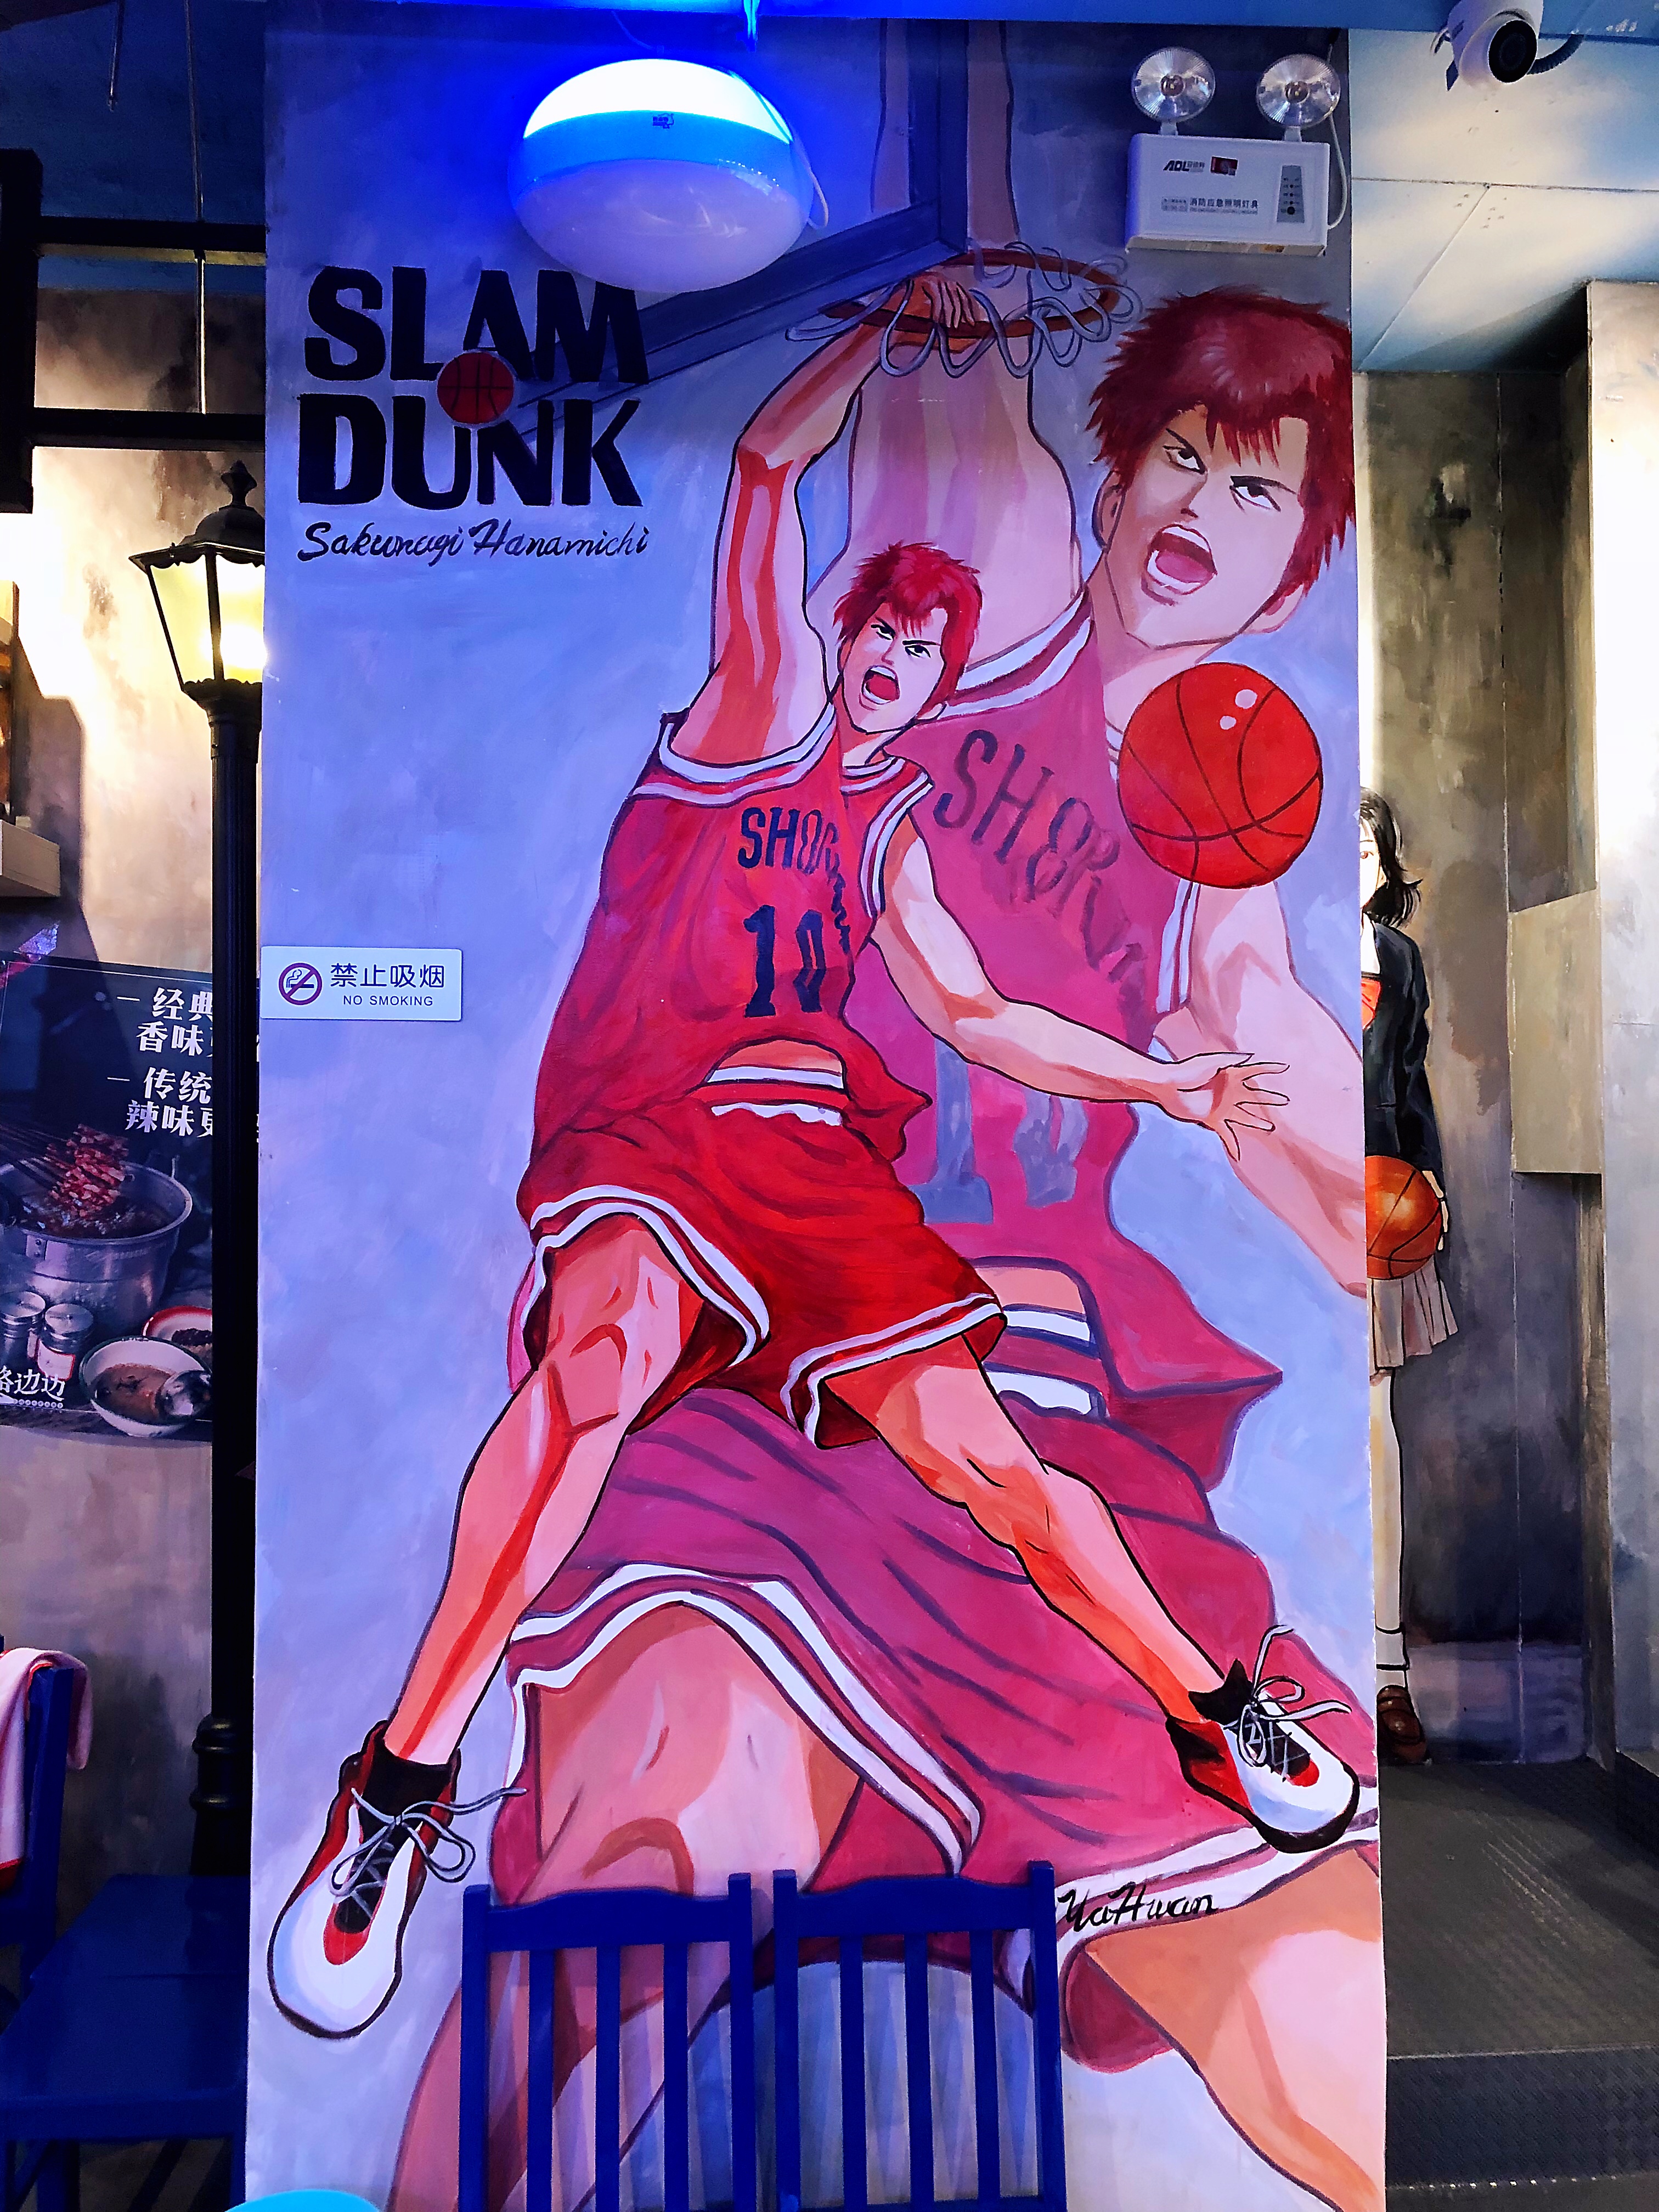 篮球场墙绘图片大全图片